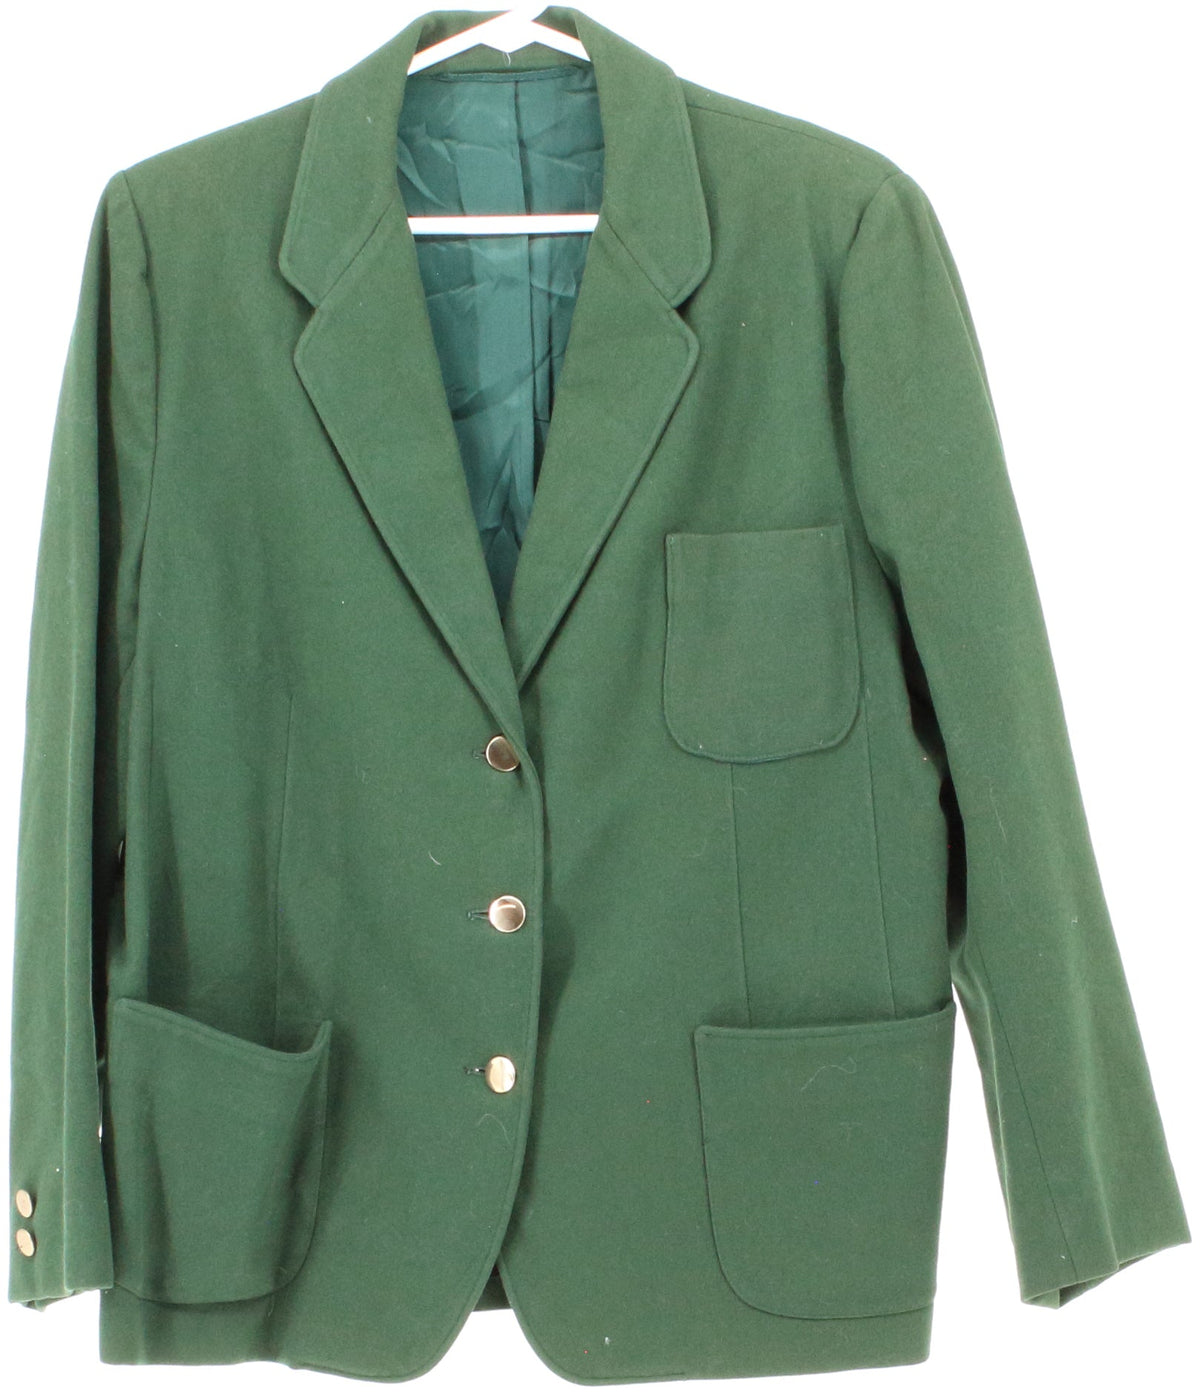 Robert Rollins Emerald Green Women's Blazer With Gold Buttons